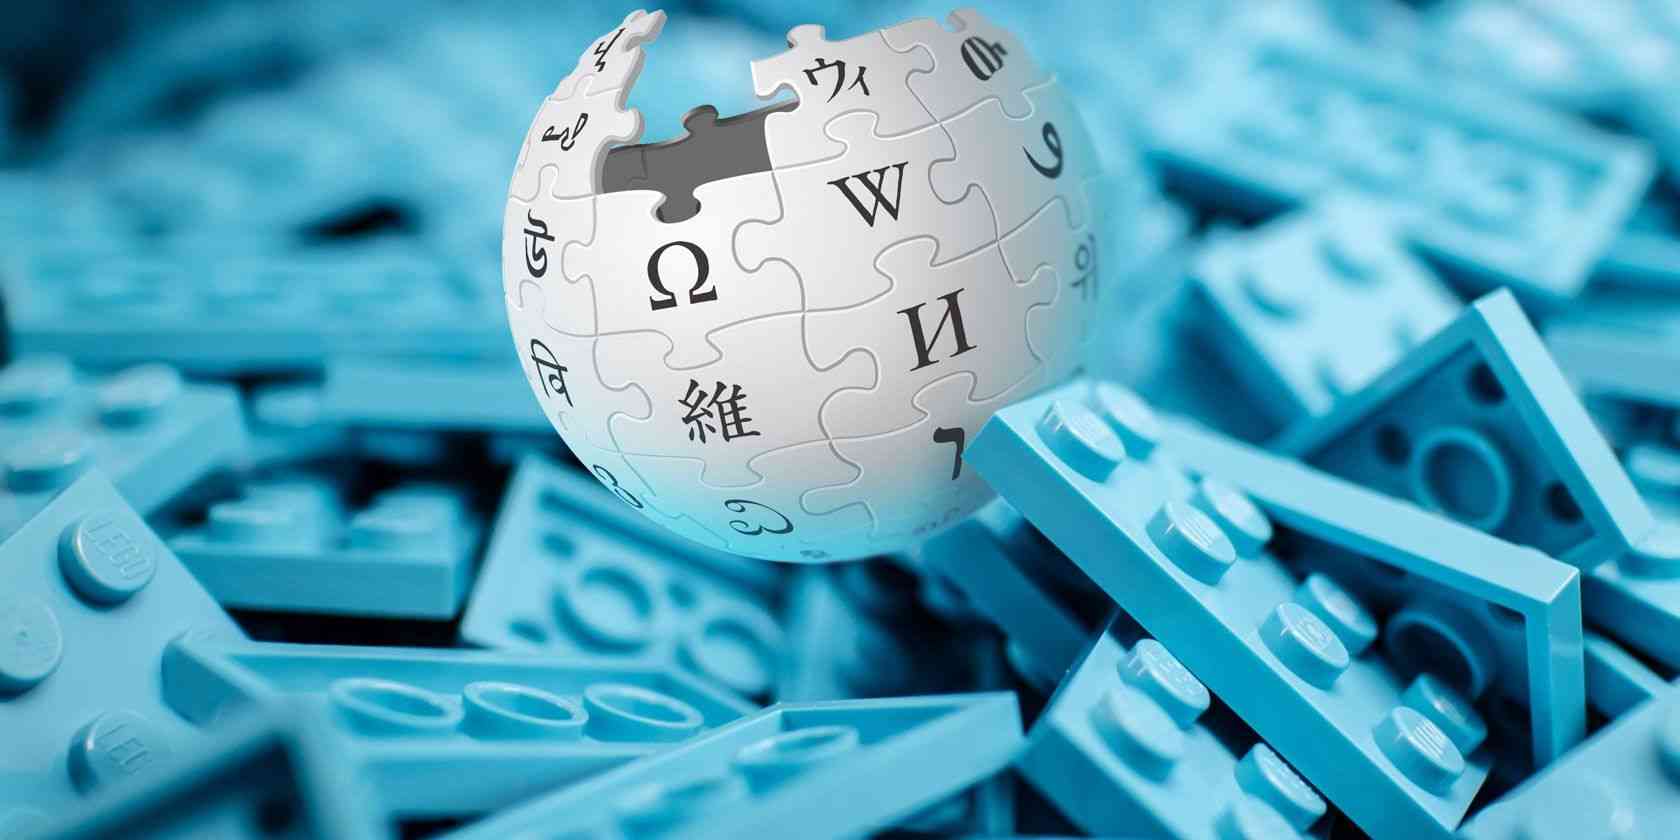 چطور سایت ویکی خود را طراحی کنیم؟